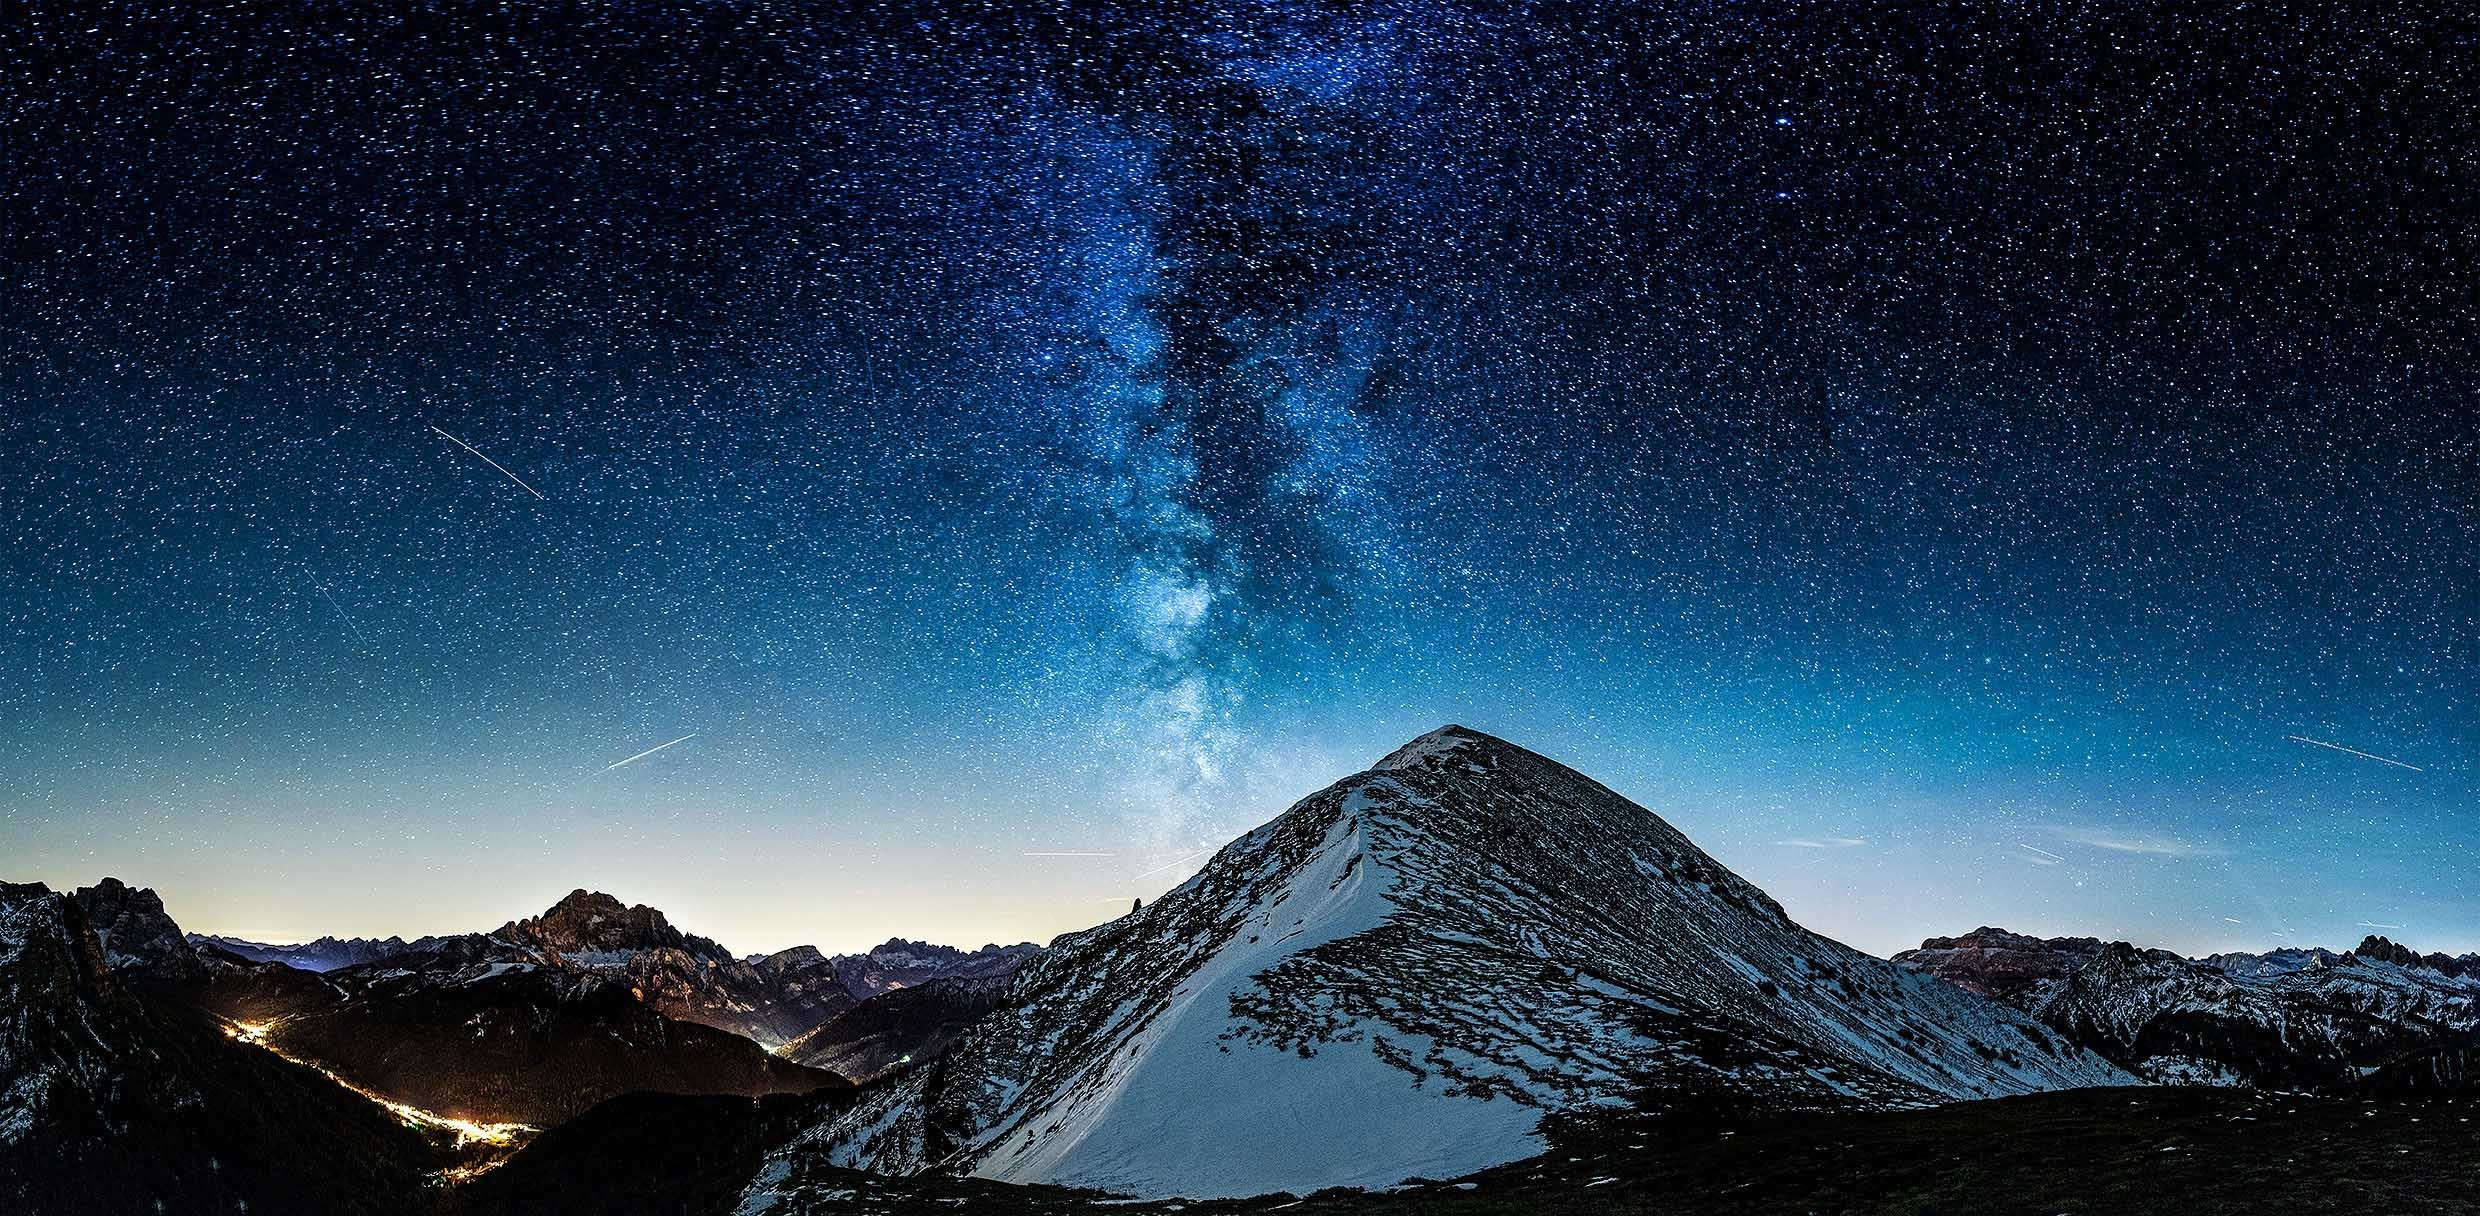 S 8 starlight. Маттерхорн Млечный путь. Горы и звезды. Звездное небо в горах. Горы ночью.